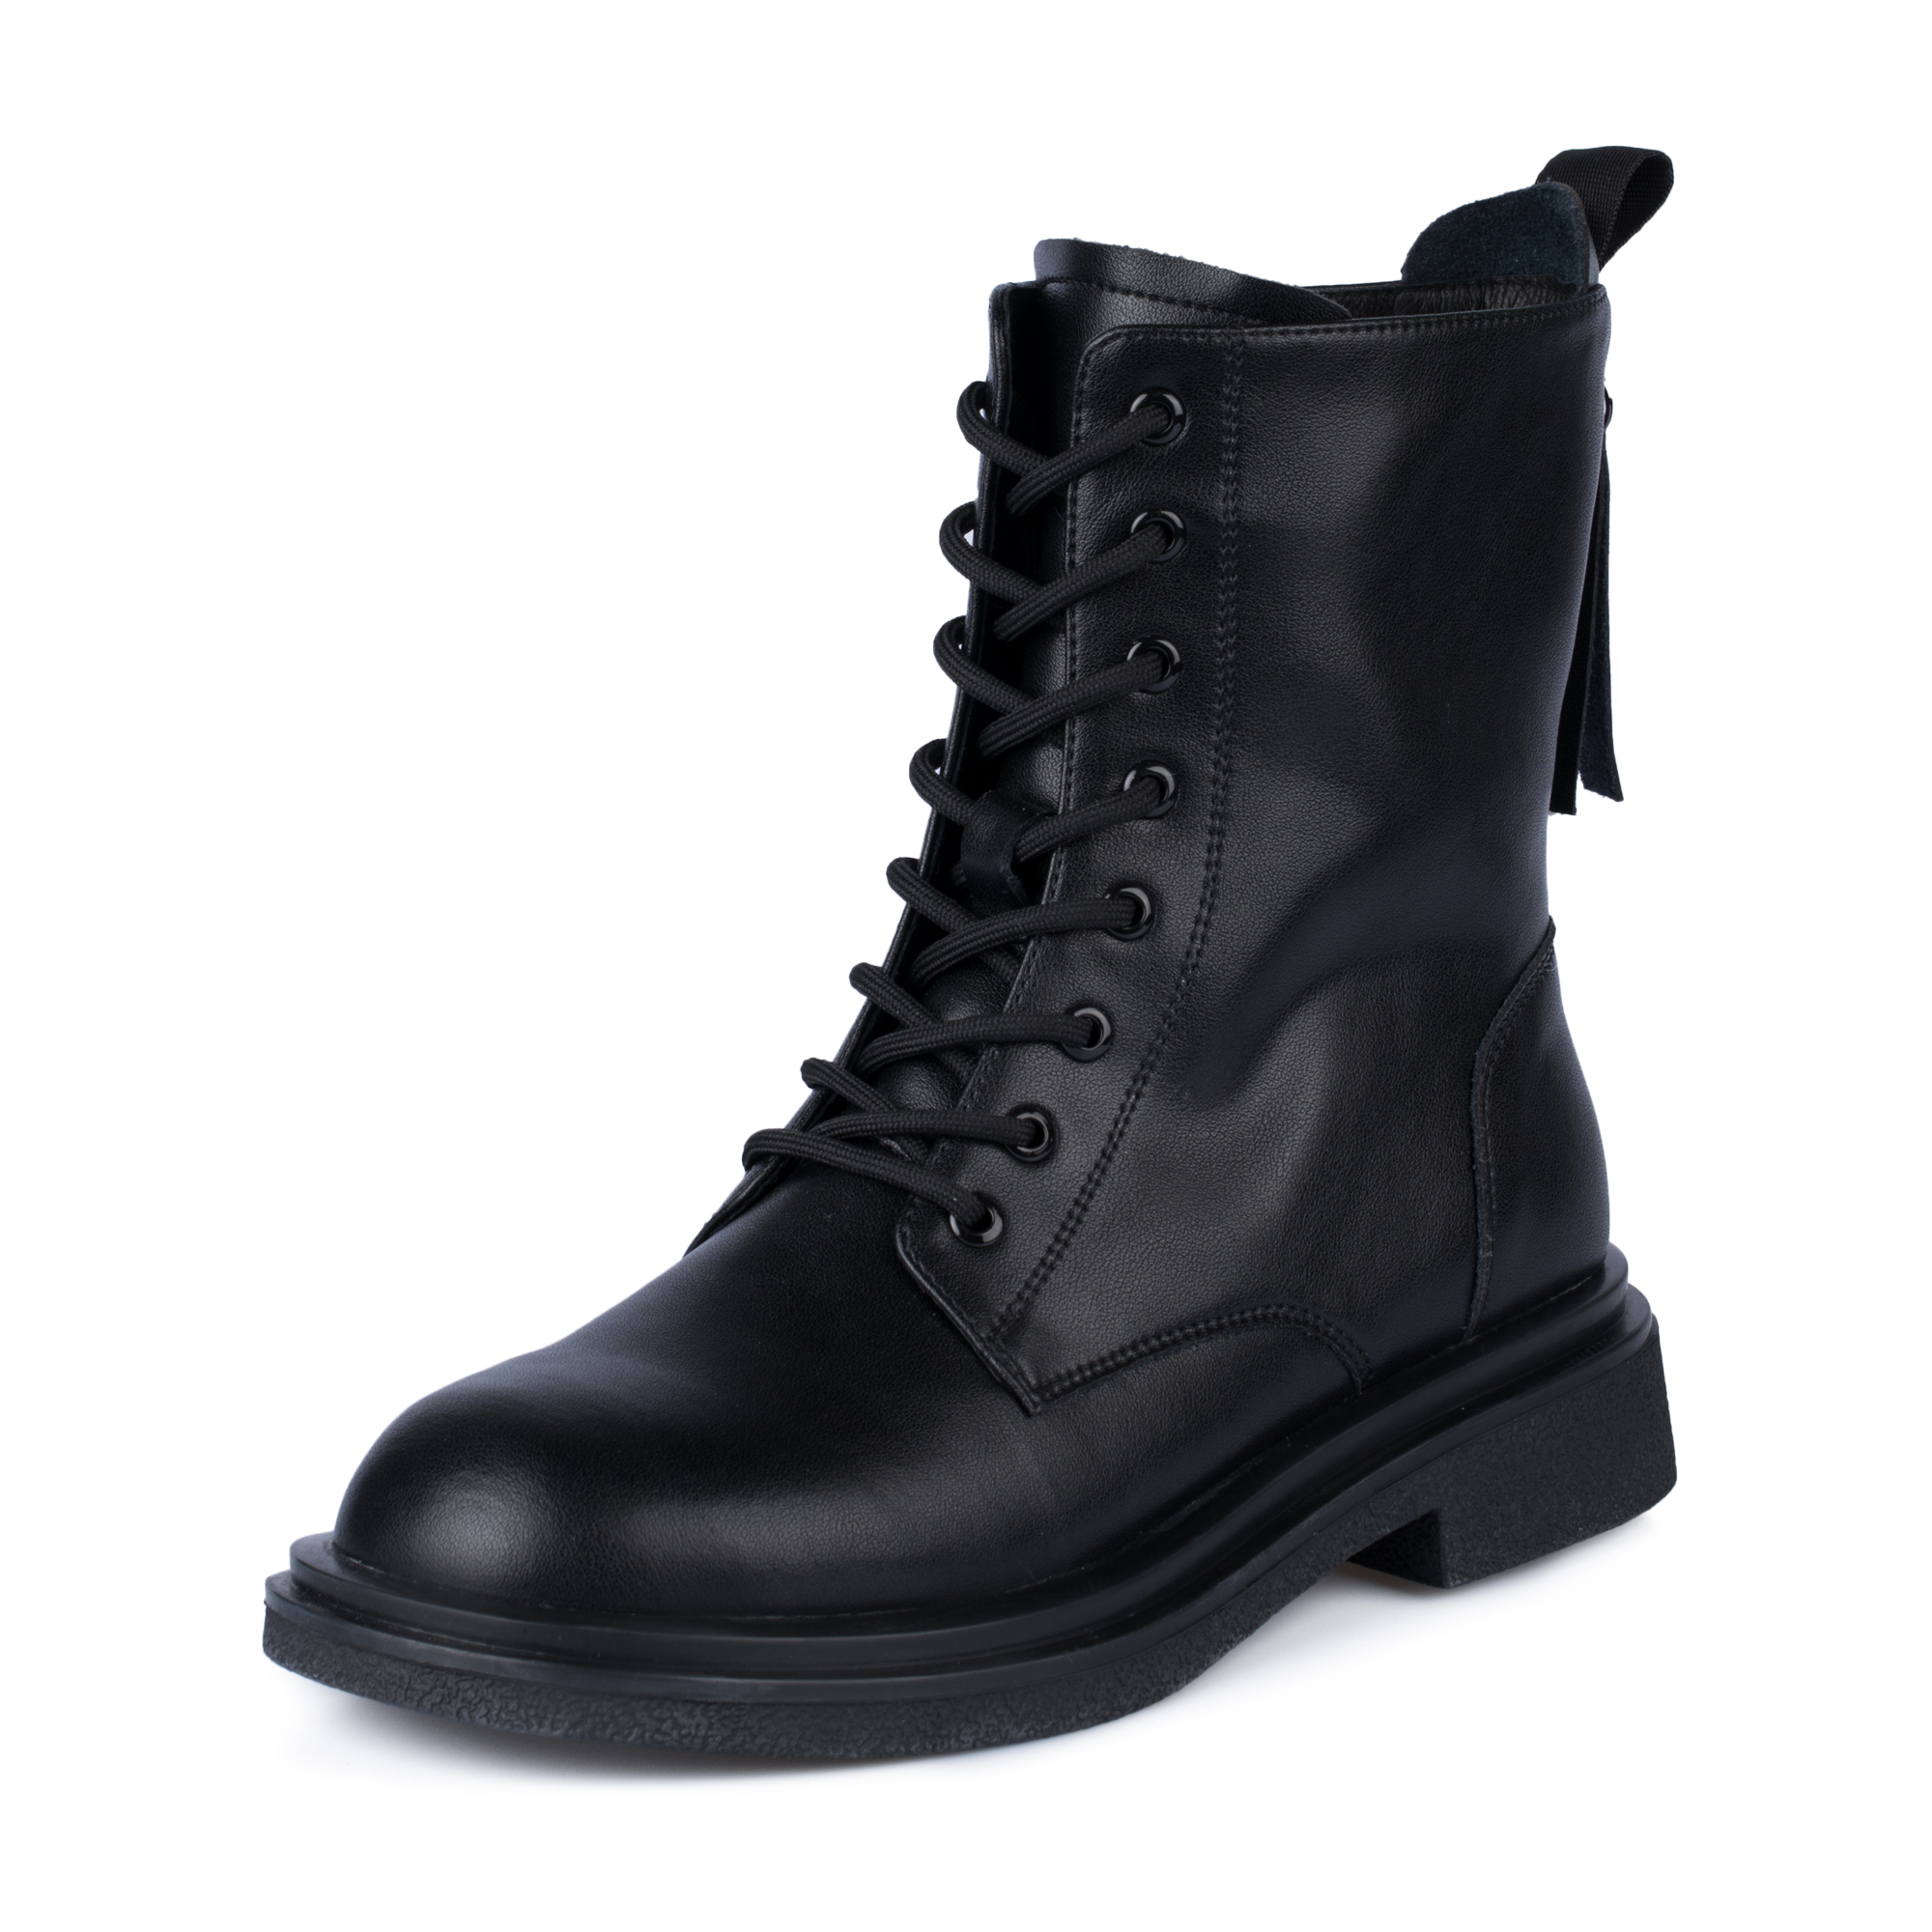 Ботинки Thomas Munz 098-704B-5602, цвет черный, размер 38 - фото 2